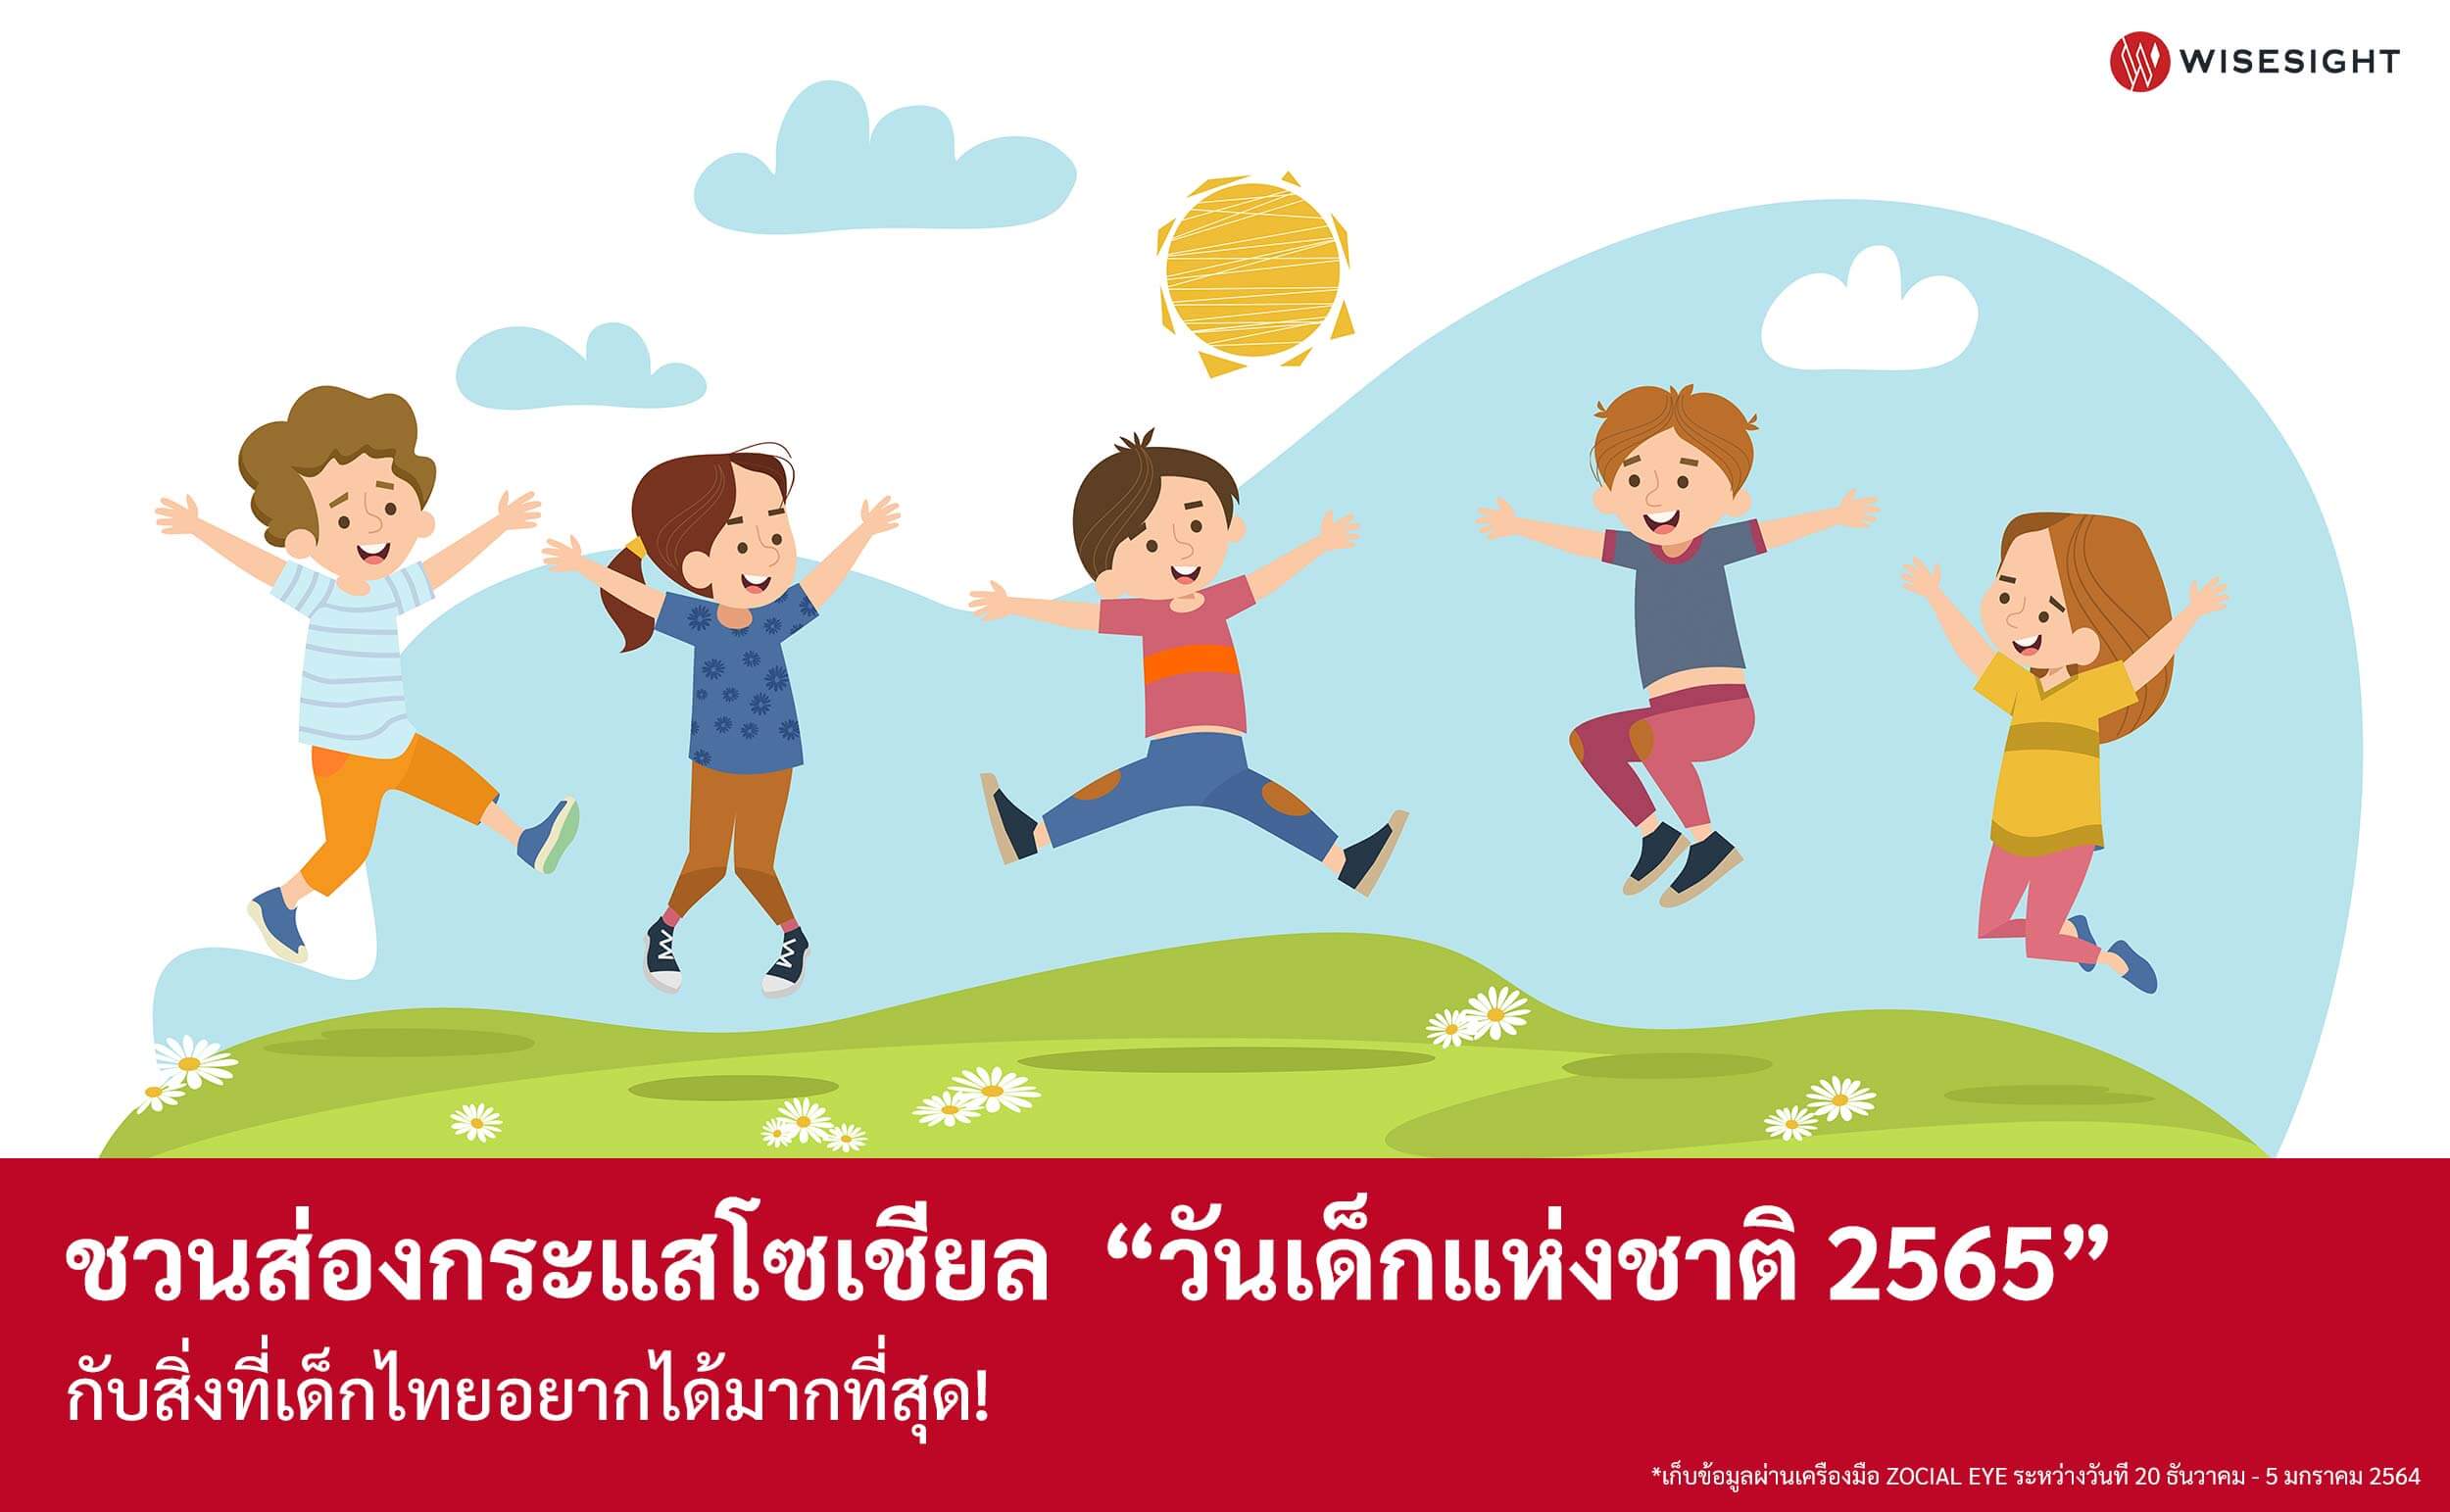 เปิดข้อมูลวันเด็ก 2565 เด็กไทยอยากได้อะไร-คำขวัญปีนี้เอ็นเกจเมนต์ทะลุล้าน